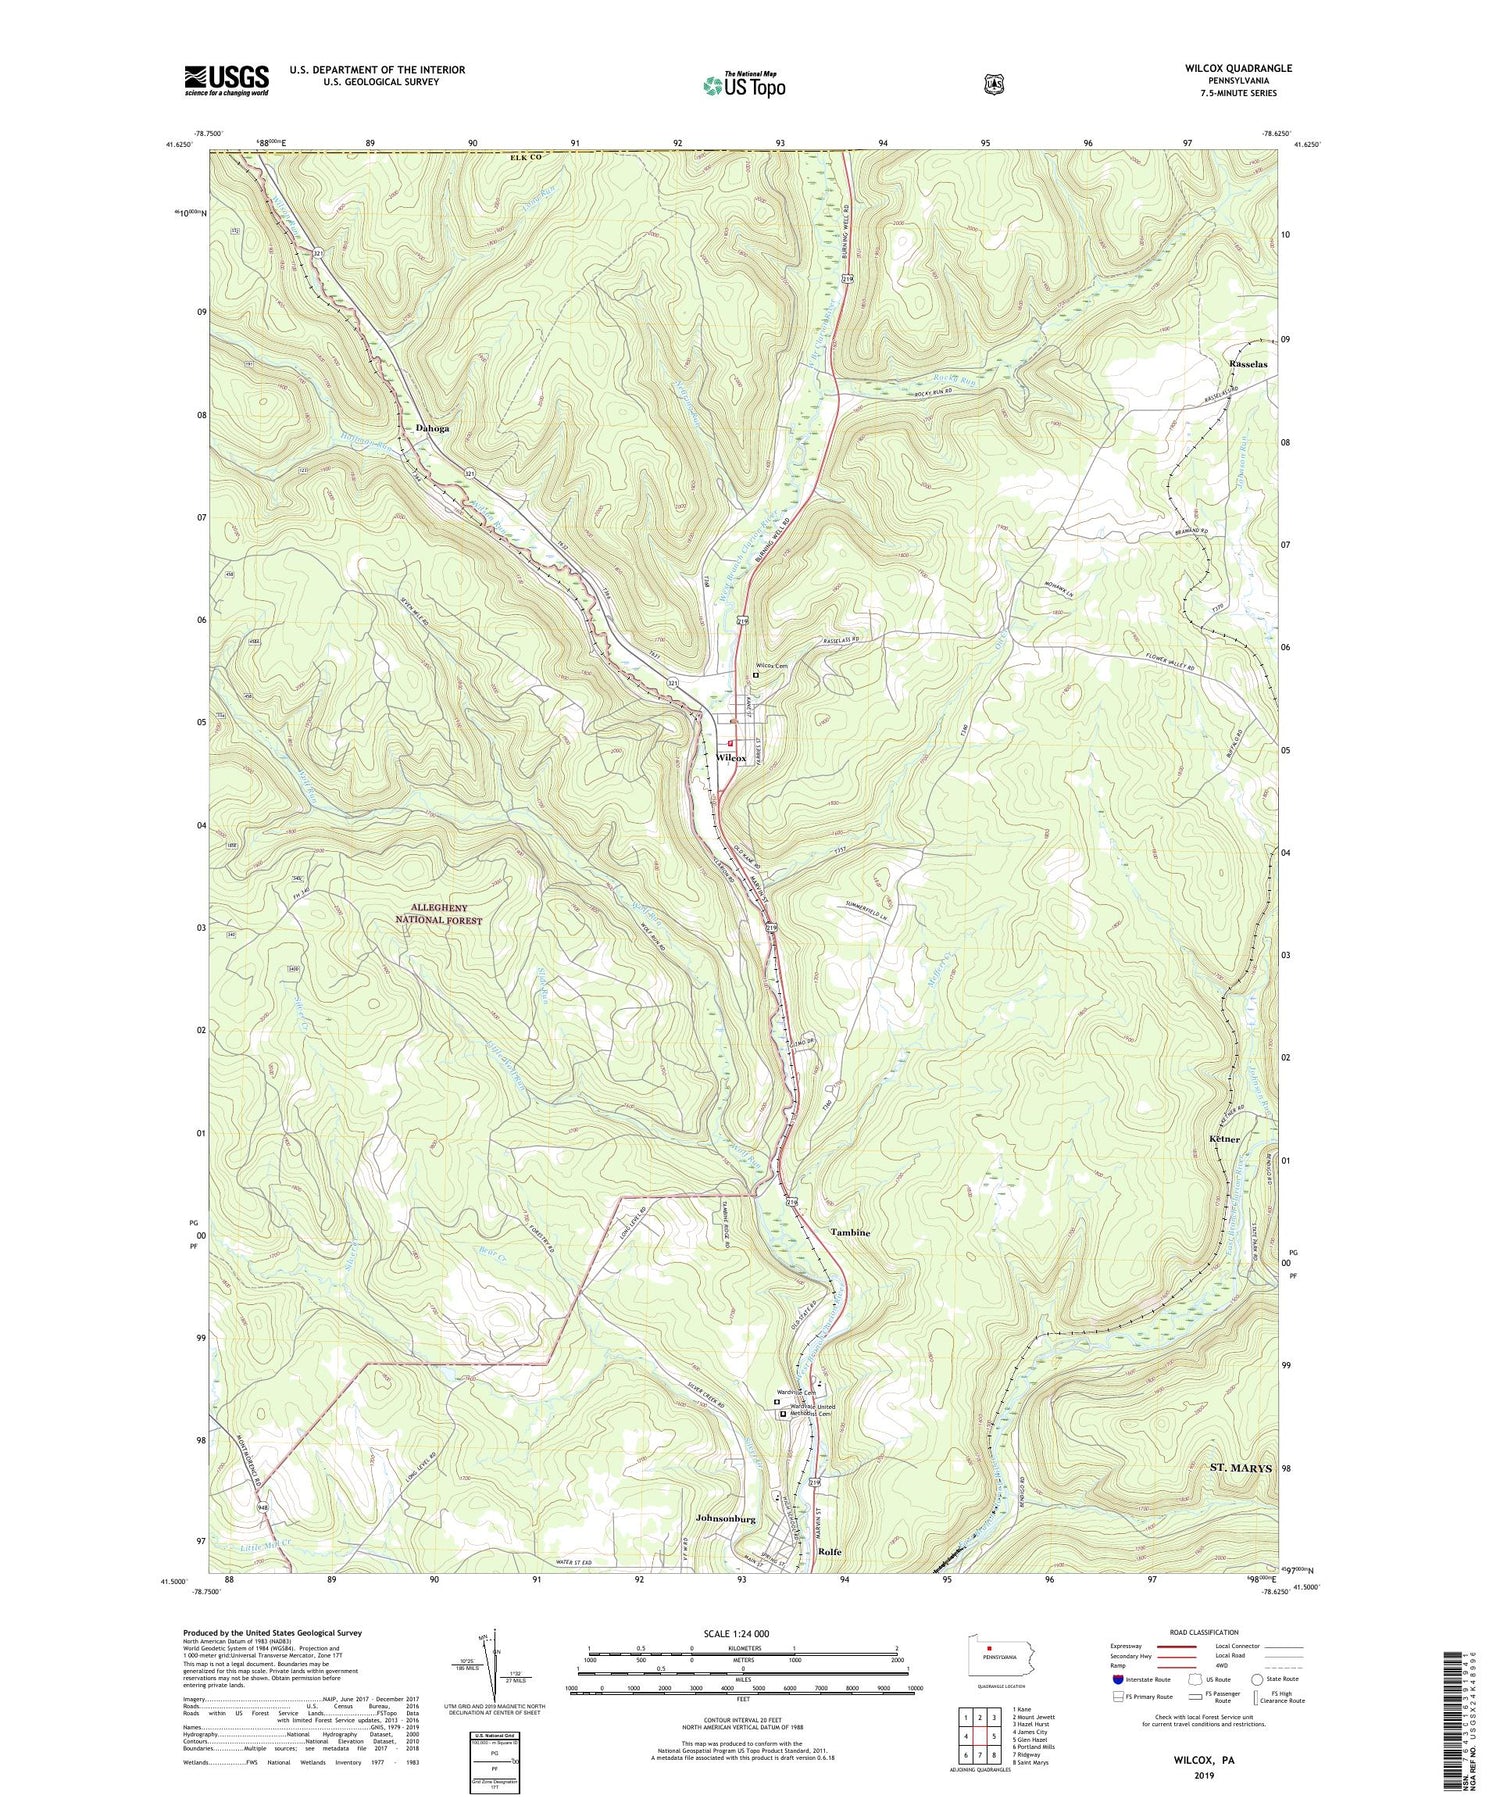 Wilcox Pennsylvania US Topo Map Image